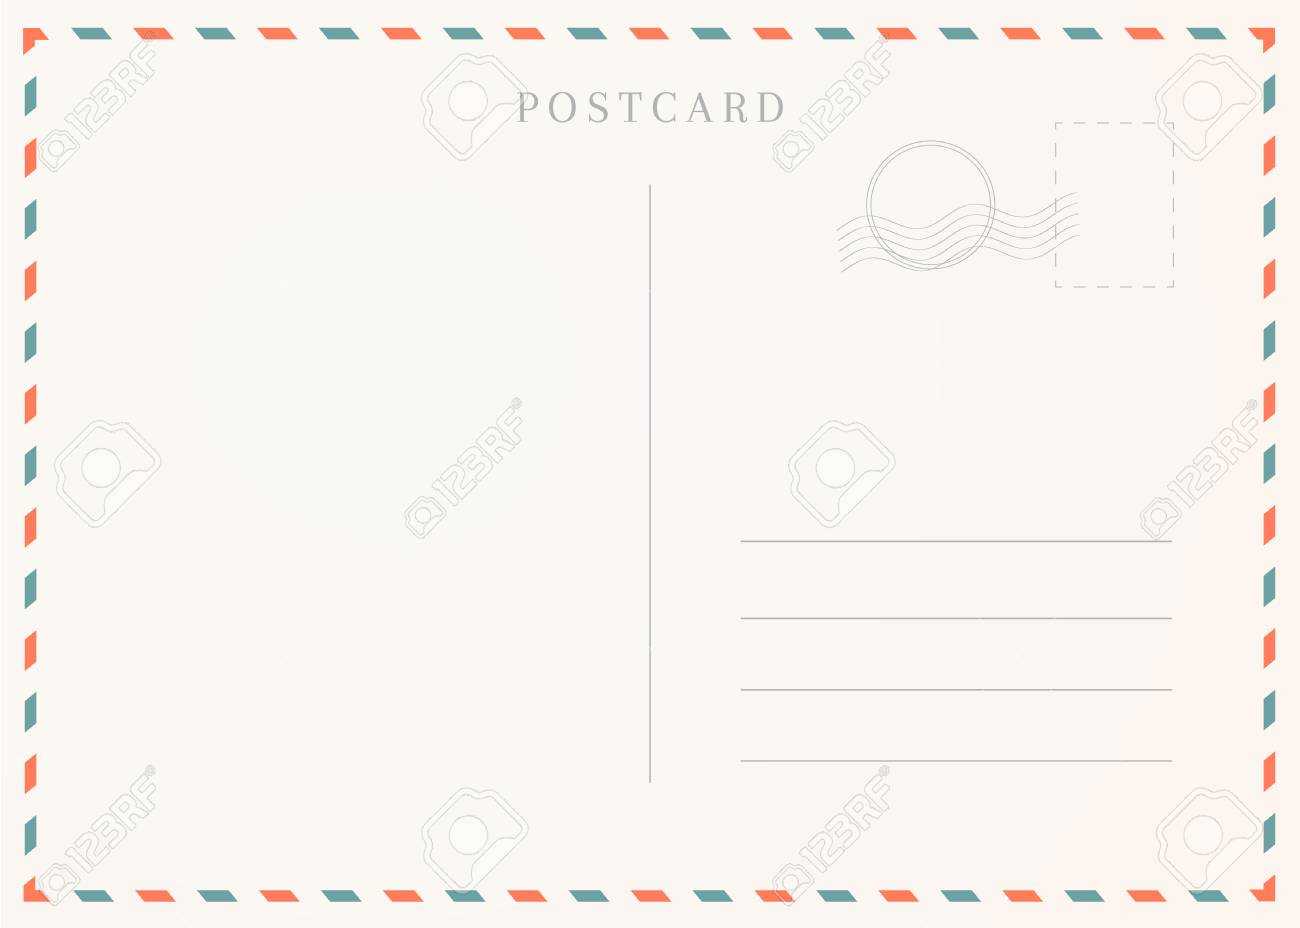 Vintage Postcard Template. Postal Card Illustration For Design. Regarding Post Cards Template